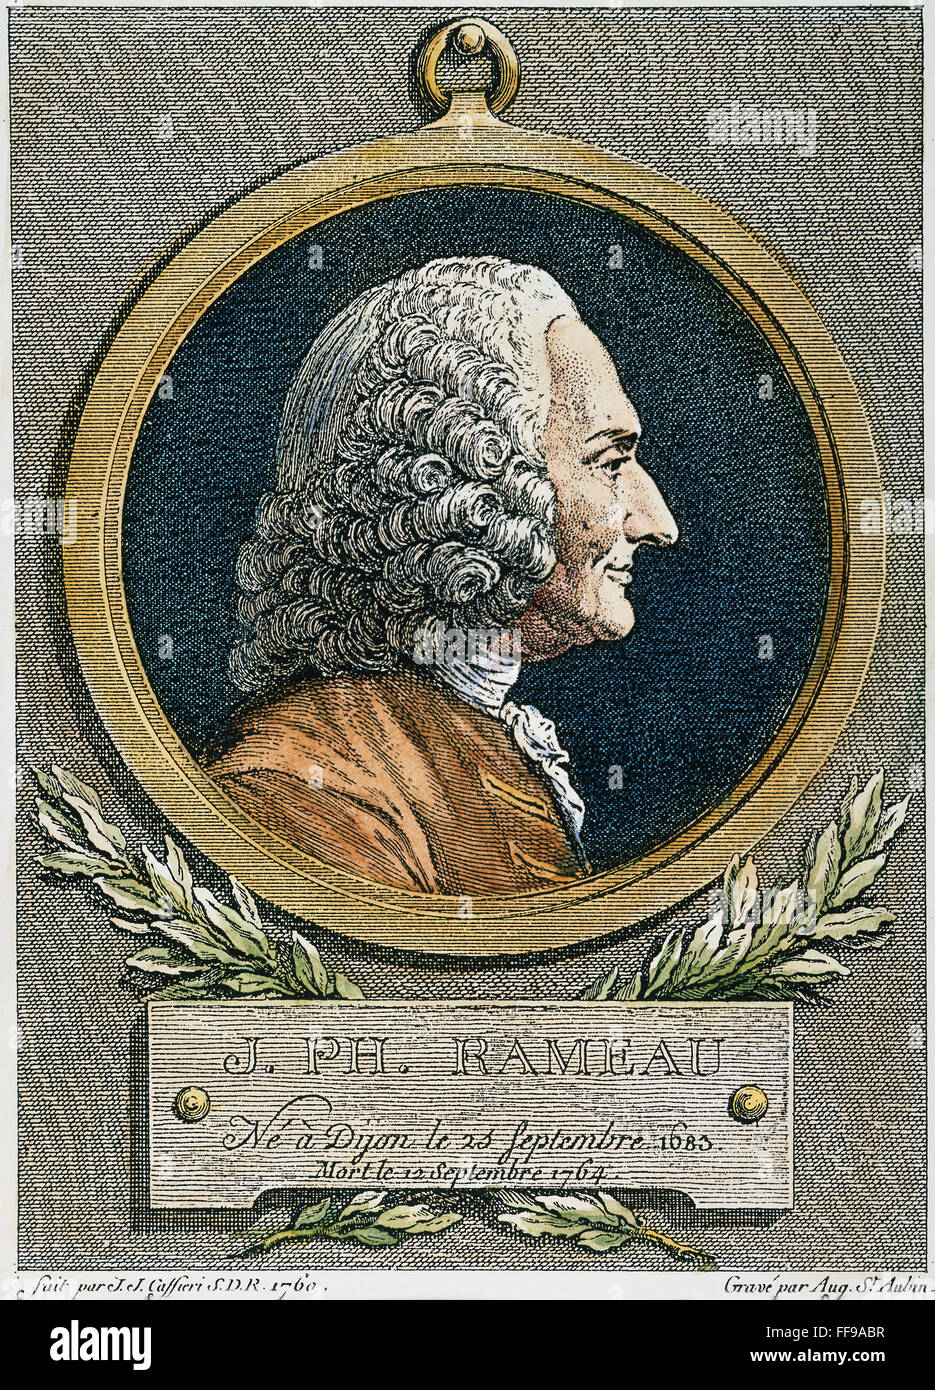 JEAN PHILIPPE RAMEAU /n(1683-1764). Französischer Komponist und Musiktheoretiker. Kupferstich, 1762, Augustin de Saint-Aubin nach einer Büste, 1760, von Jean-Jacques Caffieri. Stockfoto